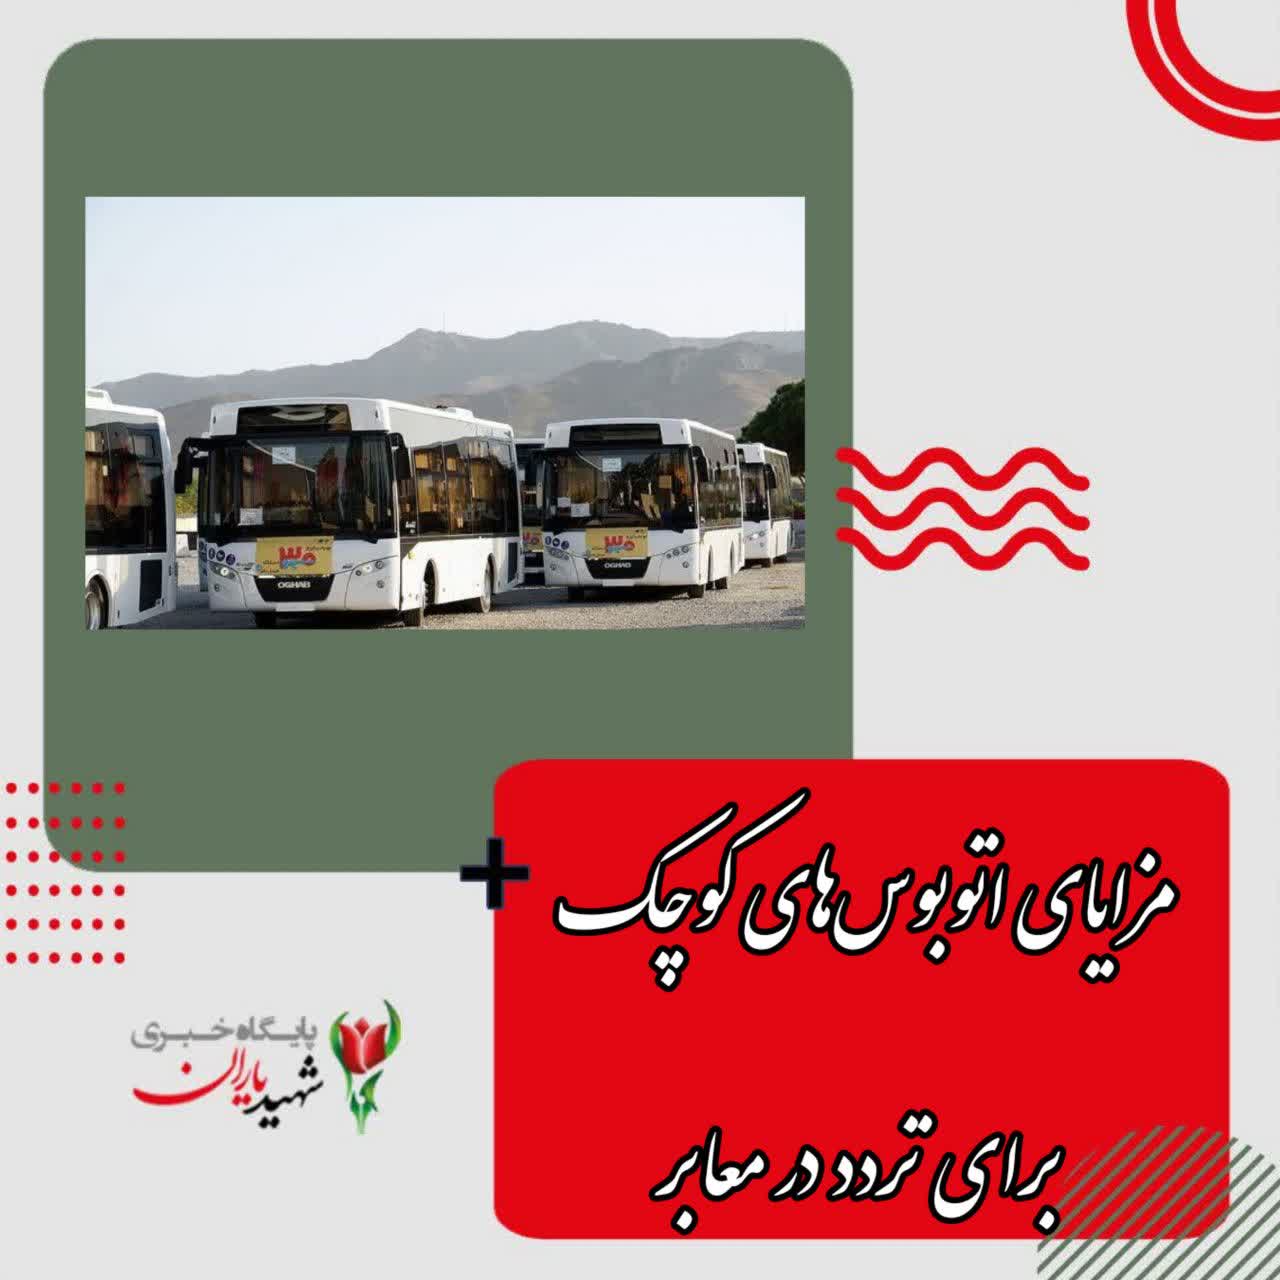 معاون حمل و نقل و ترافیک شهرداری اصفهان تاکید کرد: